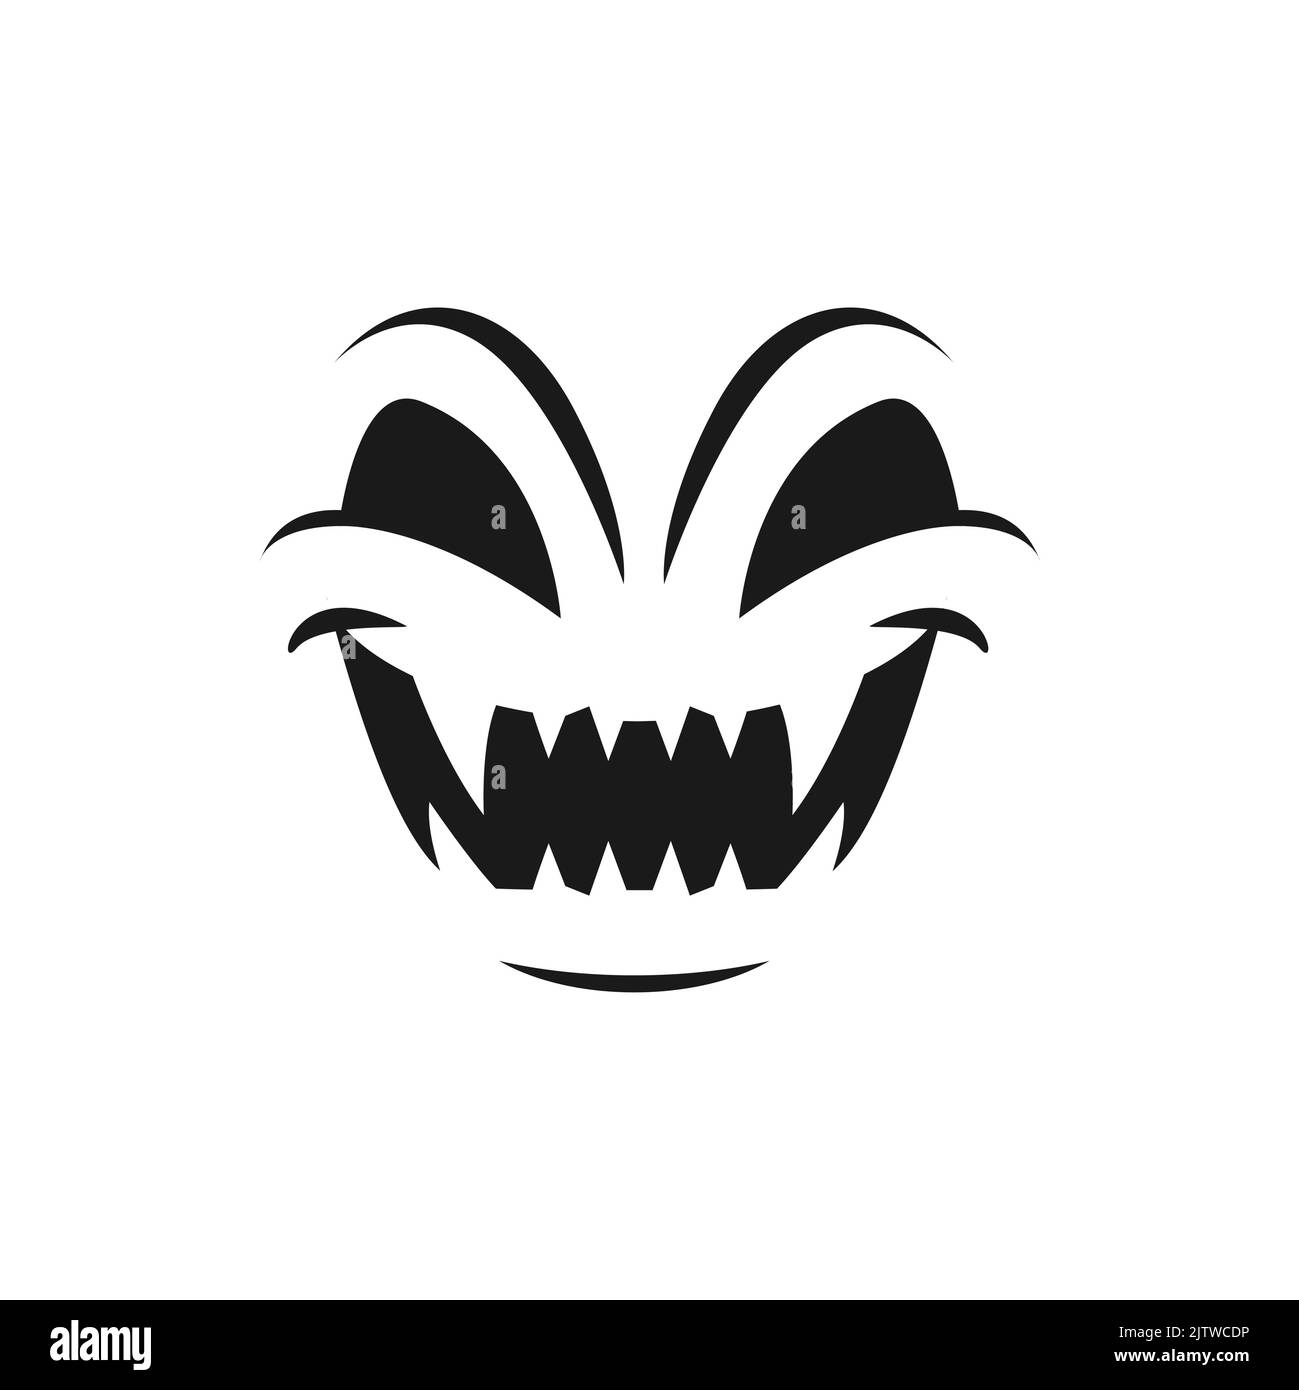 Icône de vecteur de visage d'Halloween, fantôme riant, sourire maléfique effrayant, émoticône de citrouille crépite avec les yeux et la bouche en colère avec les dents pointues, lanterne de cric isolée monochrome émotion monstre Illustration de Vecteur